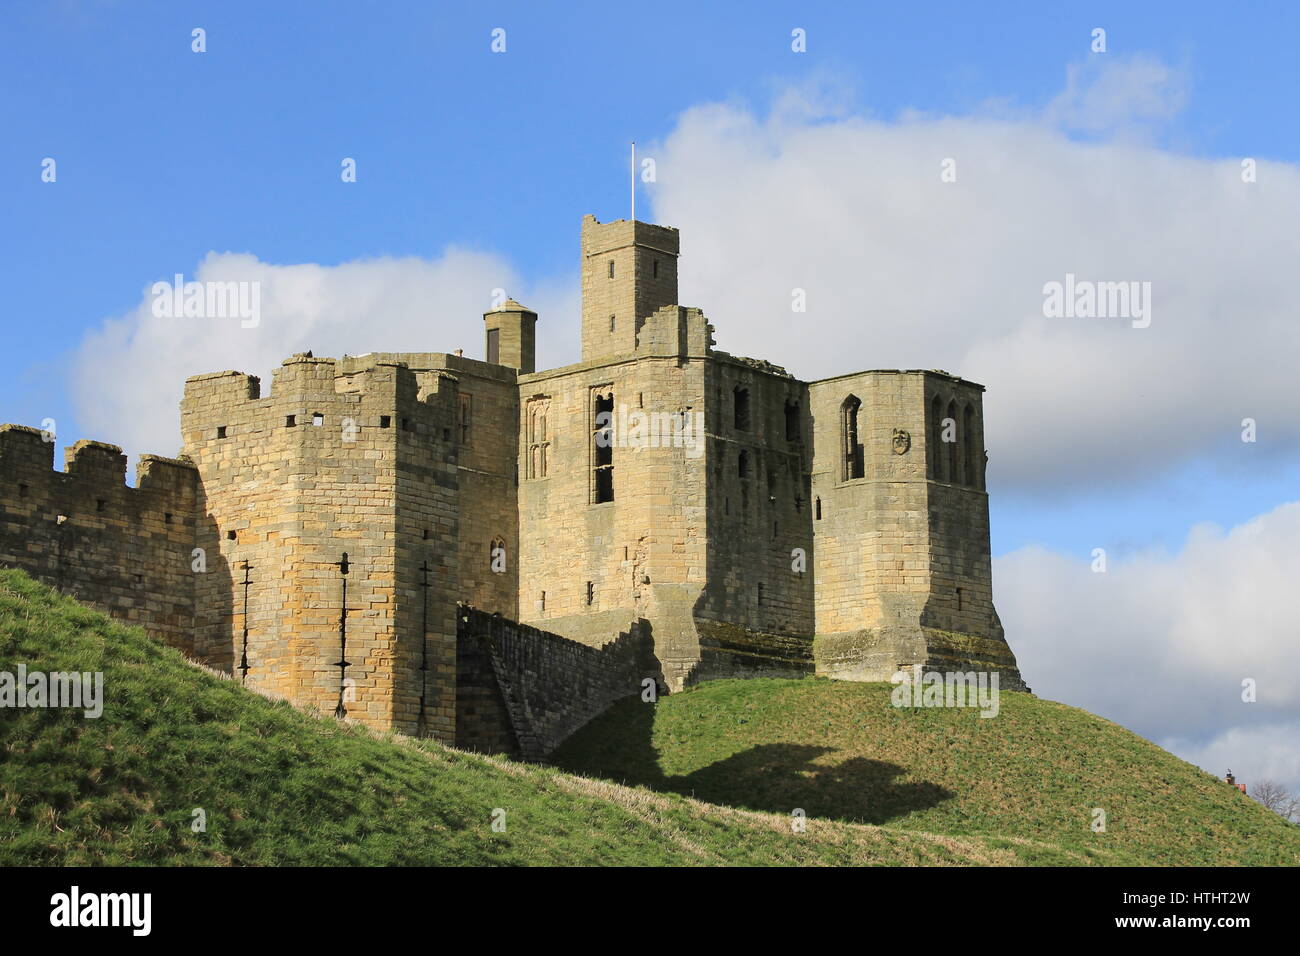 Warkworth Castle, Warkworth, Northumberland, England, UK Stock Photo